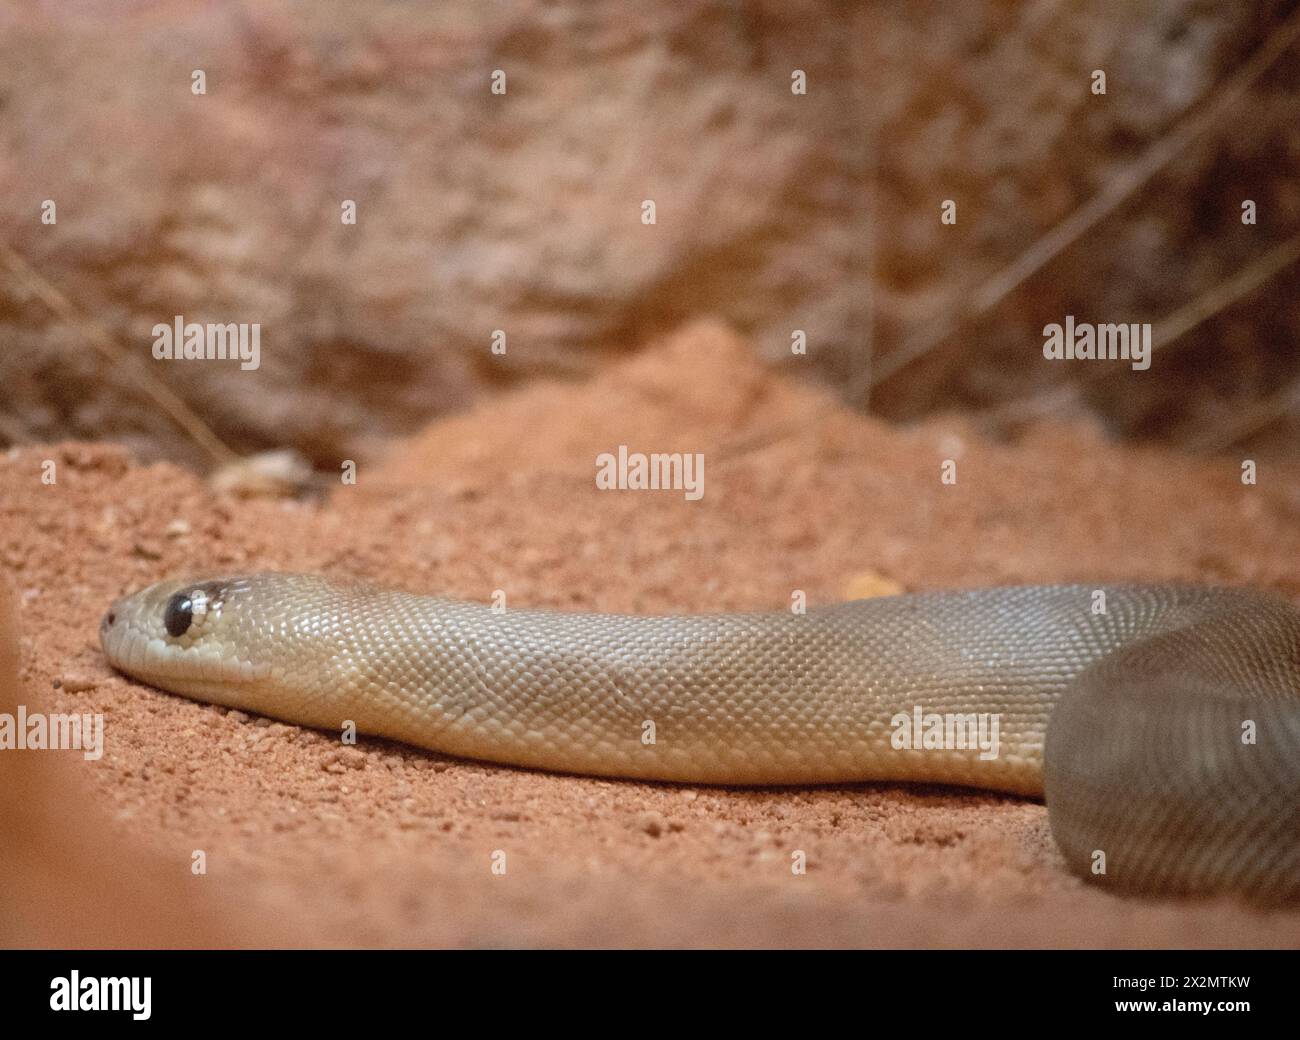 Die Woma-Schlange ist grau-braun oder goldbraun Python auf dem Rücken mit dunkelbraunen Bändern am Körper und einem gelben oder weißen Bauch. Stockfoto